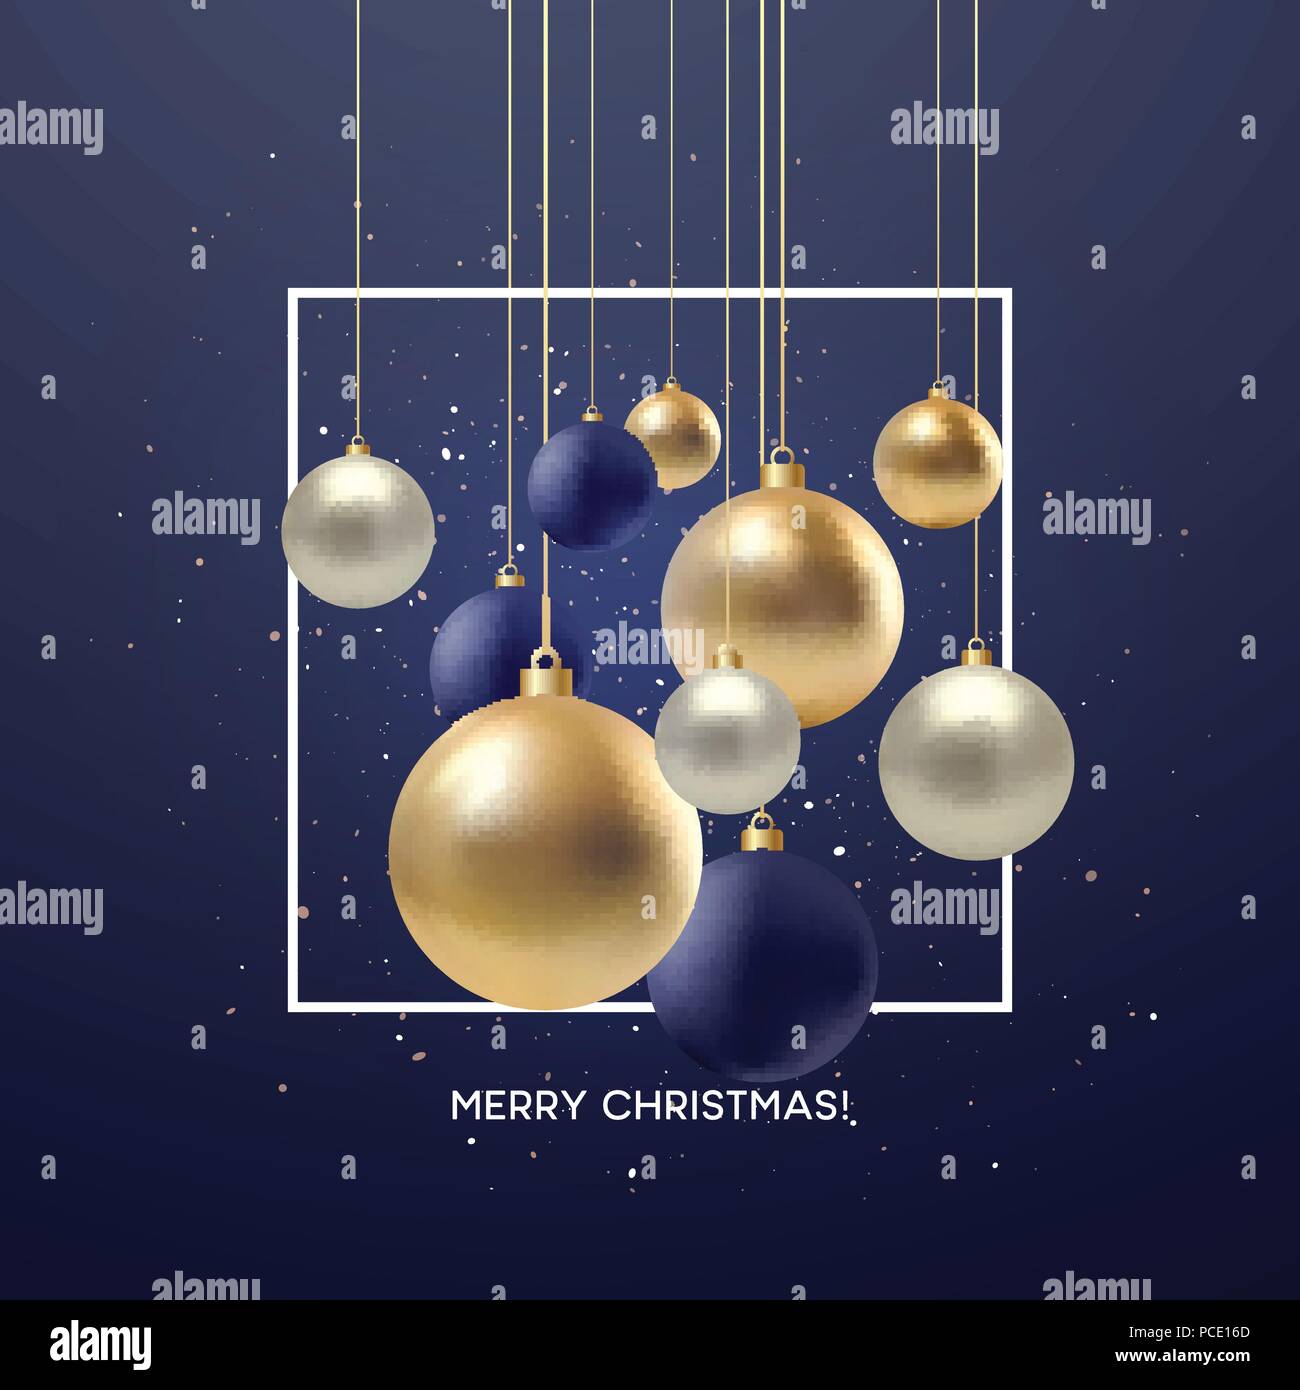 Biglietti Di Natale Glitterati.Natale Biglietto Di Auguri Design Di Xmas Nero Silvr Oro Pallina Con Golden Glitter Coriandoli Illustrazione Vettoriale Immagine E Vettoriale Alamy